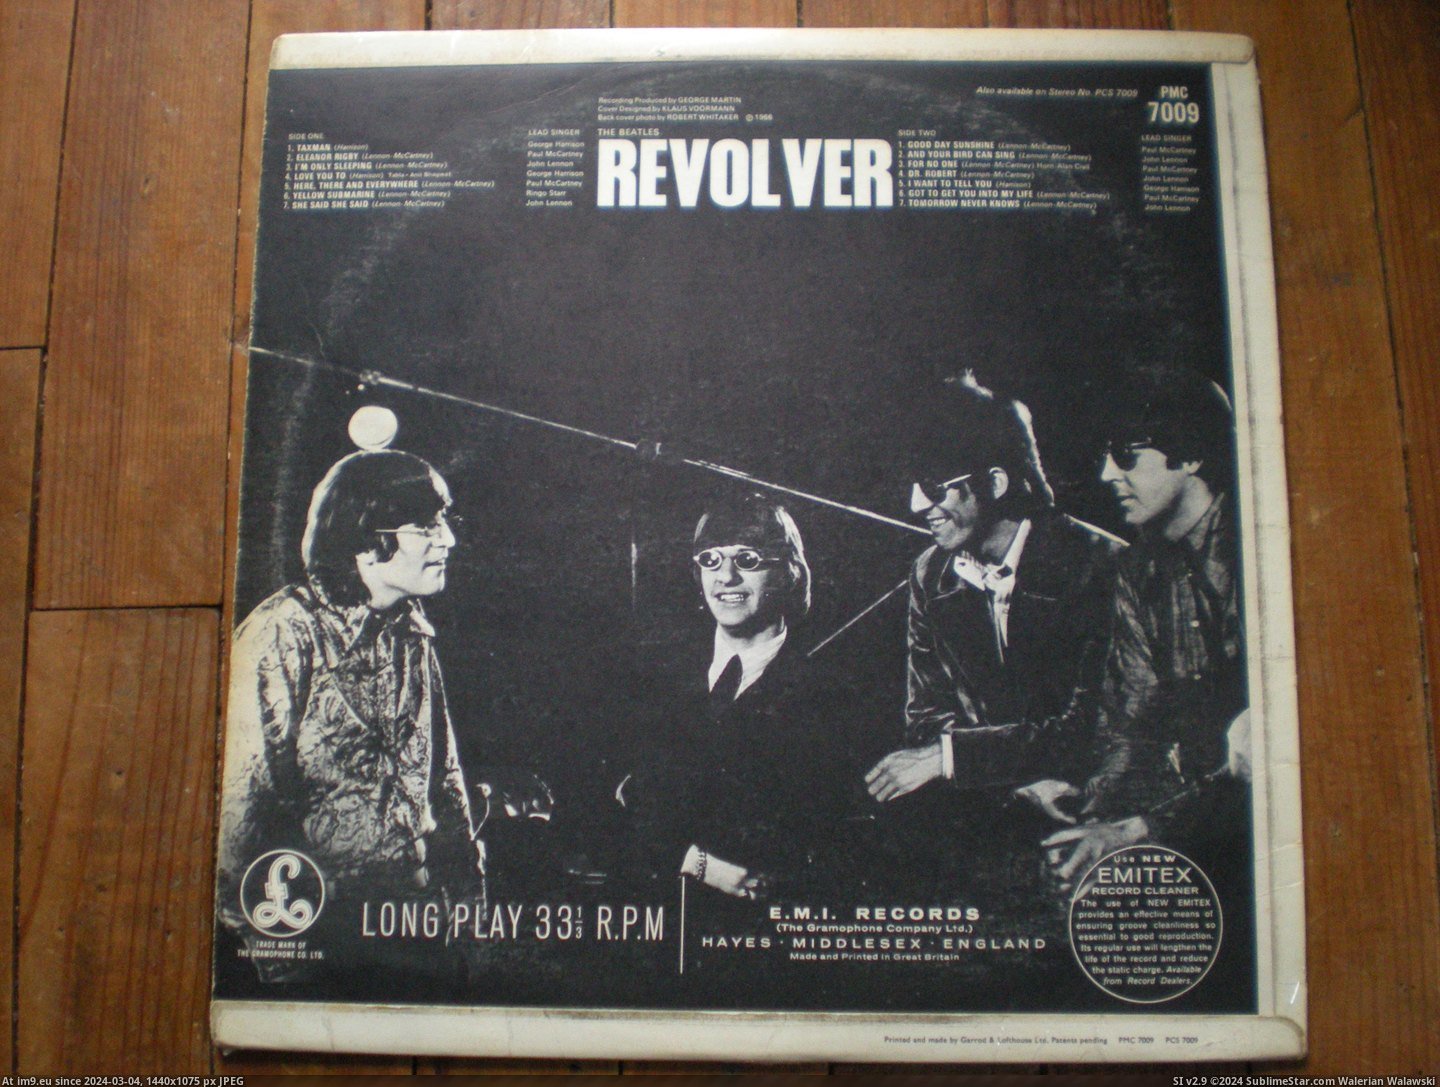  #Revolver  Revolver 17-01-14 6 Pic. (Obraz z album new 1))